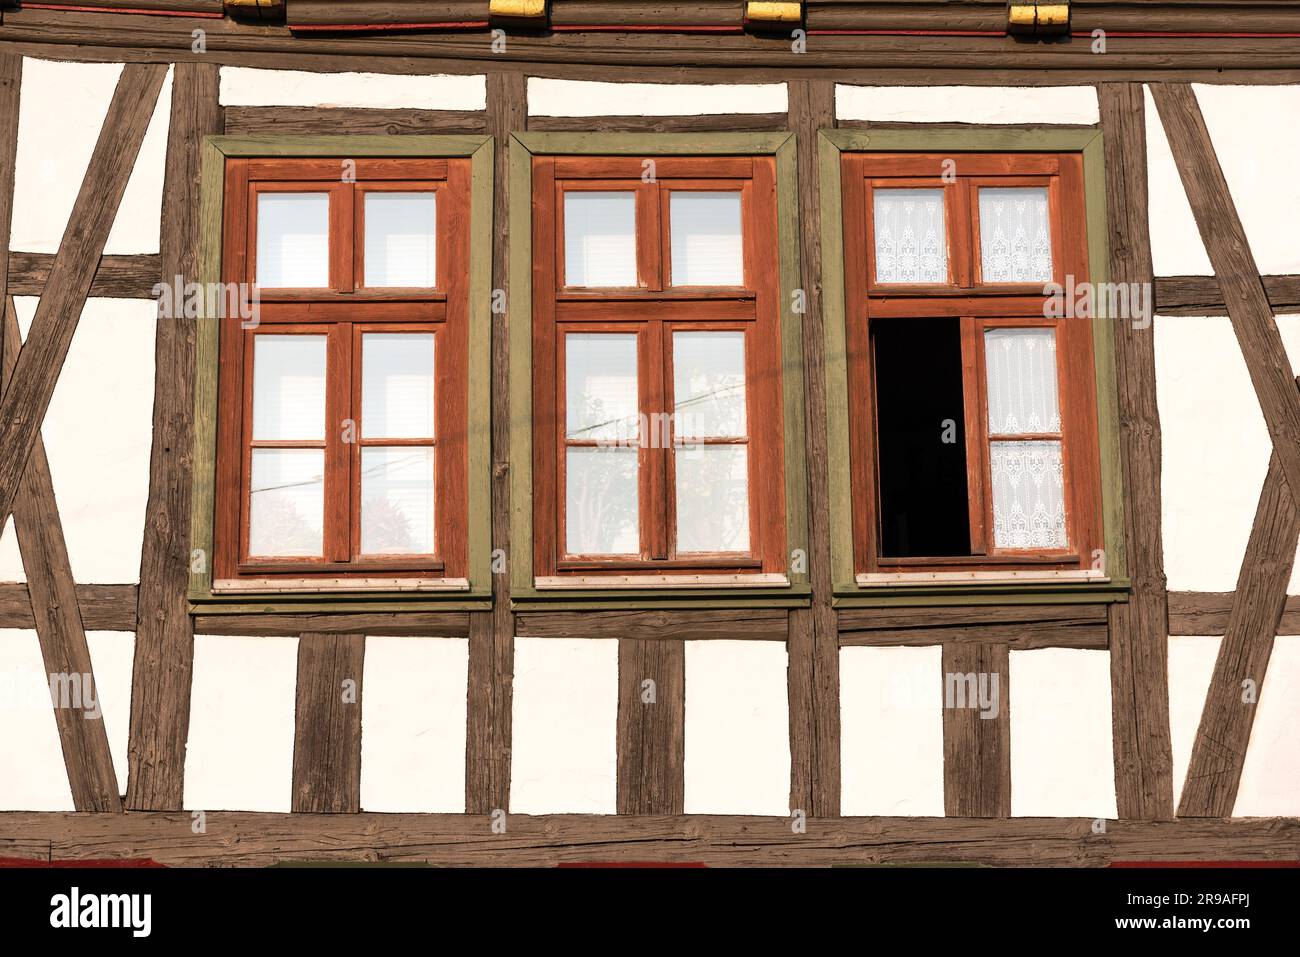 Fenêtres d'une maison historique à colombages en Allemagne Banque D'Images